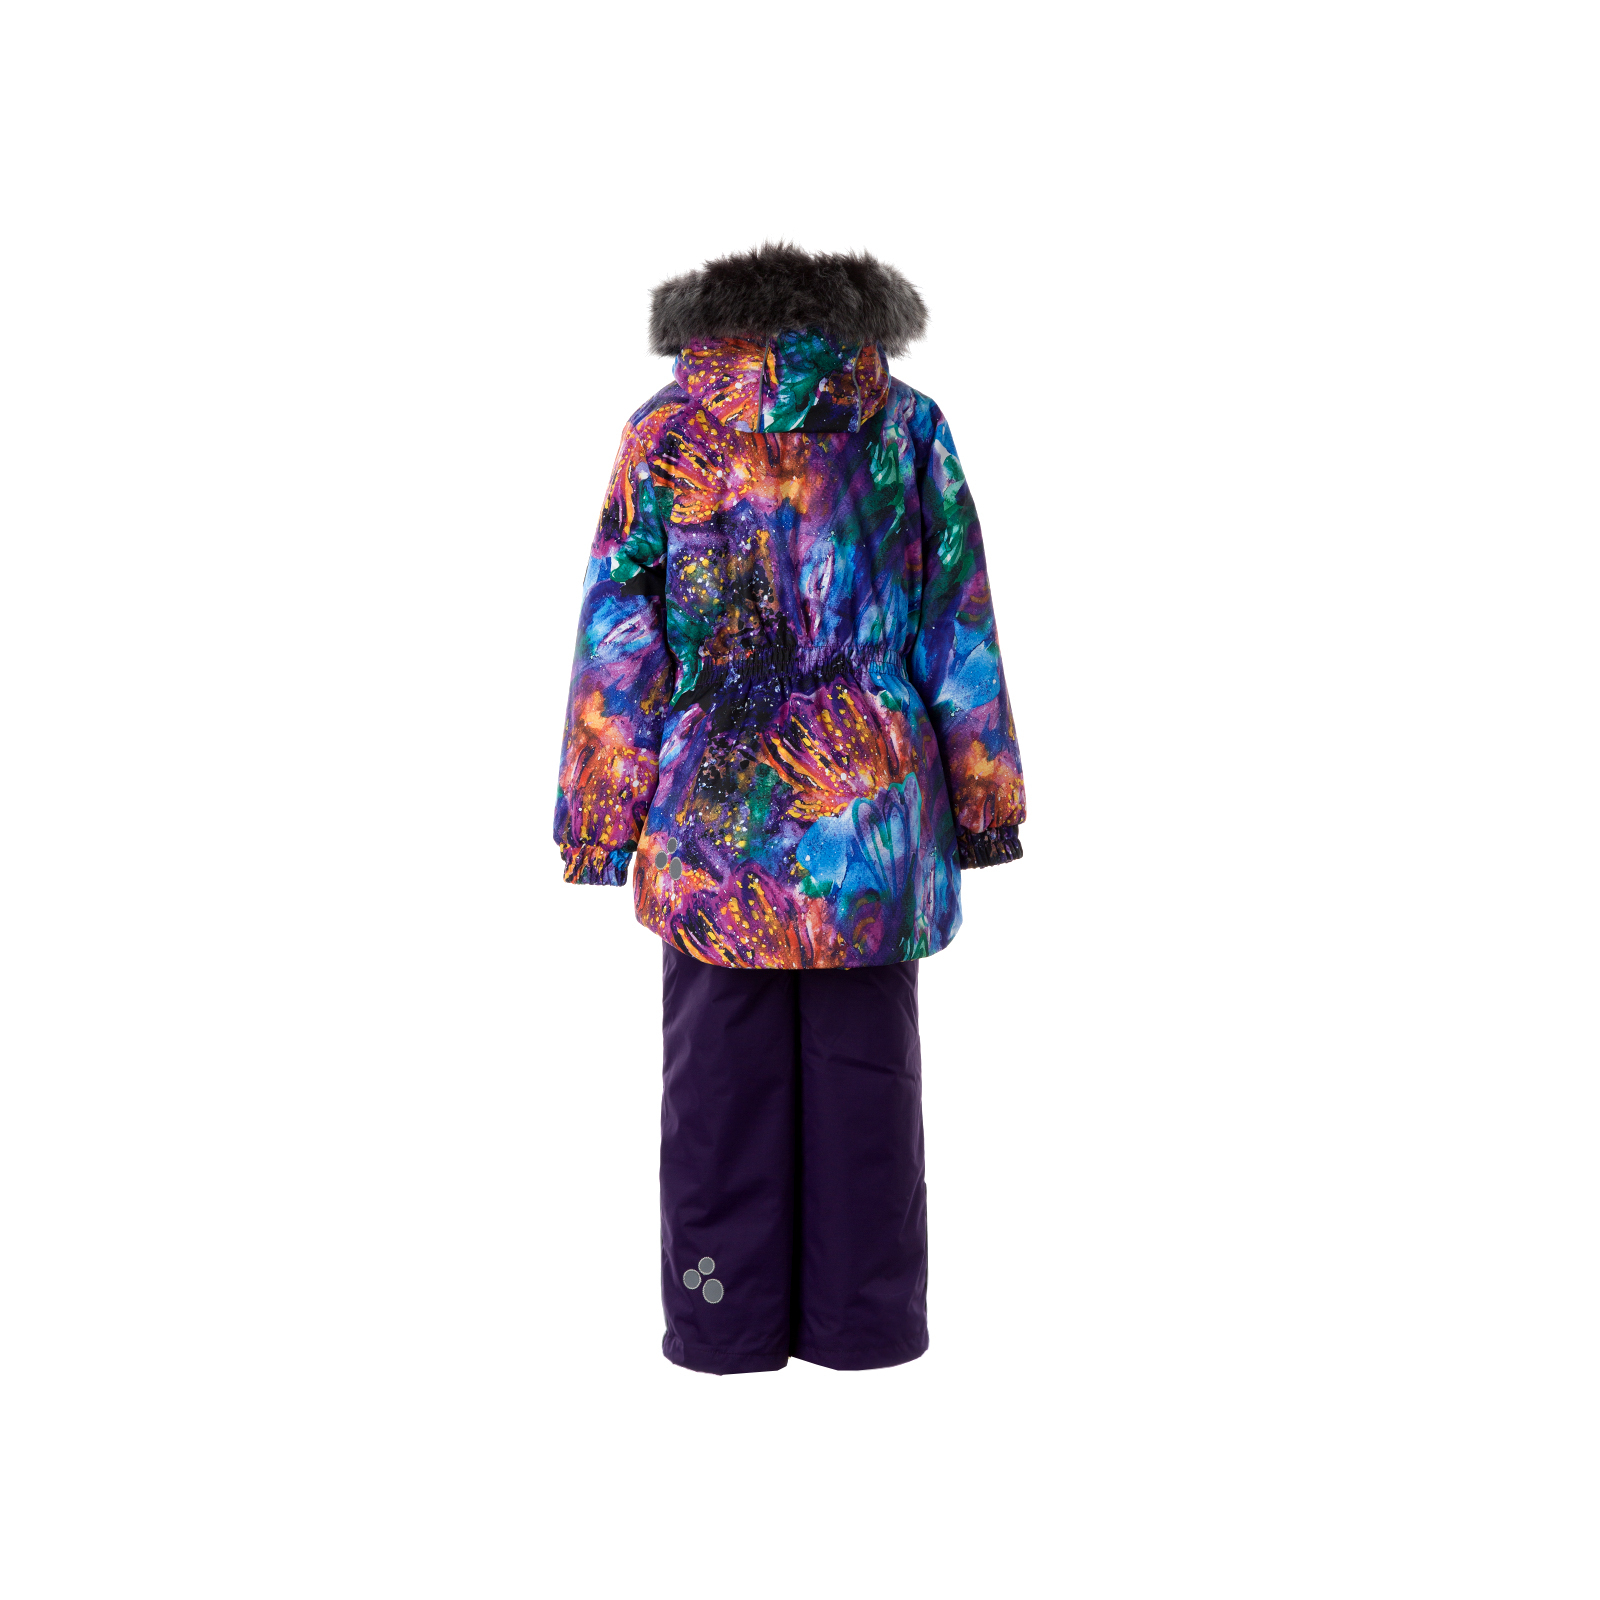 Комплект верхней одежды Huppa RENELY 2 41850230 пурпур с принтом/тёмно-лилoвый 104 (4741468979014) изображение 2